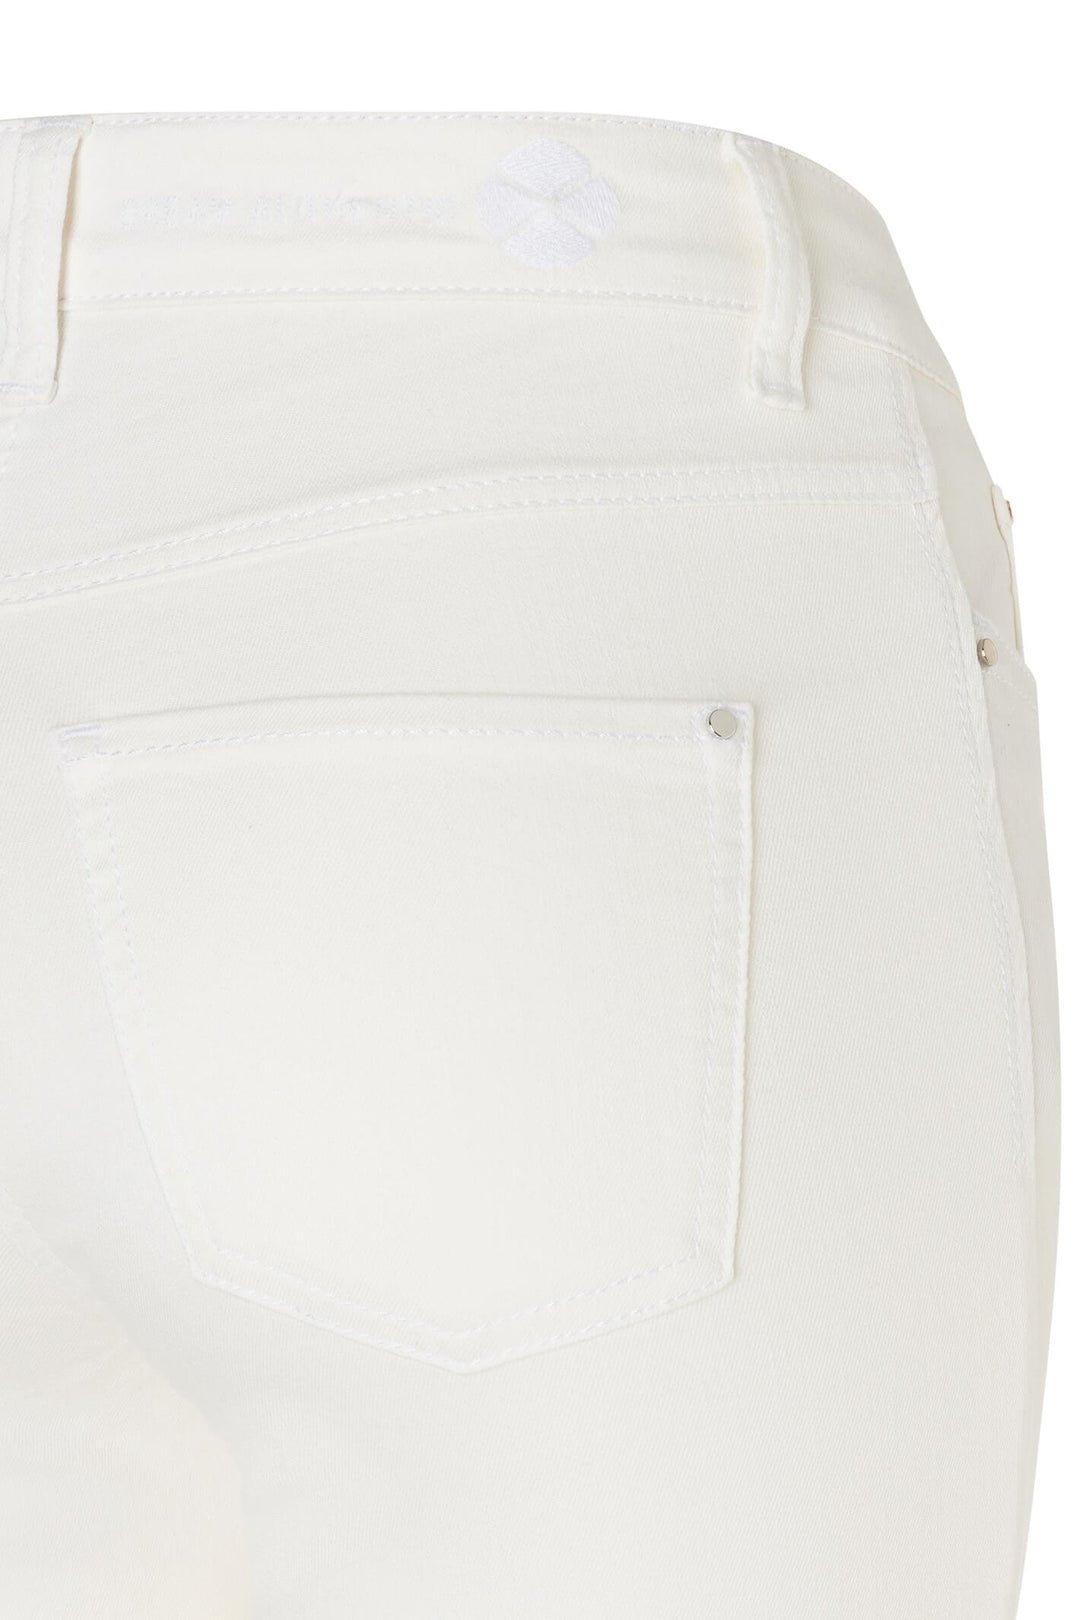 Mac Dream Wide 5439-90-0358 White Denim Mega Flex Jeans - Olivia Grace Fashion